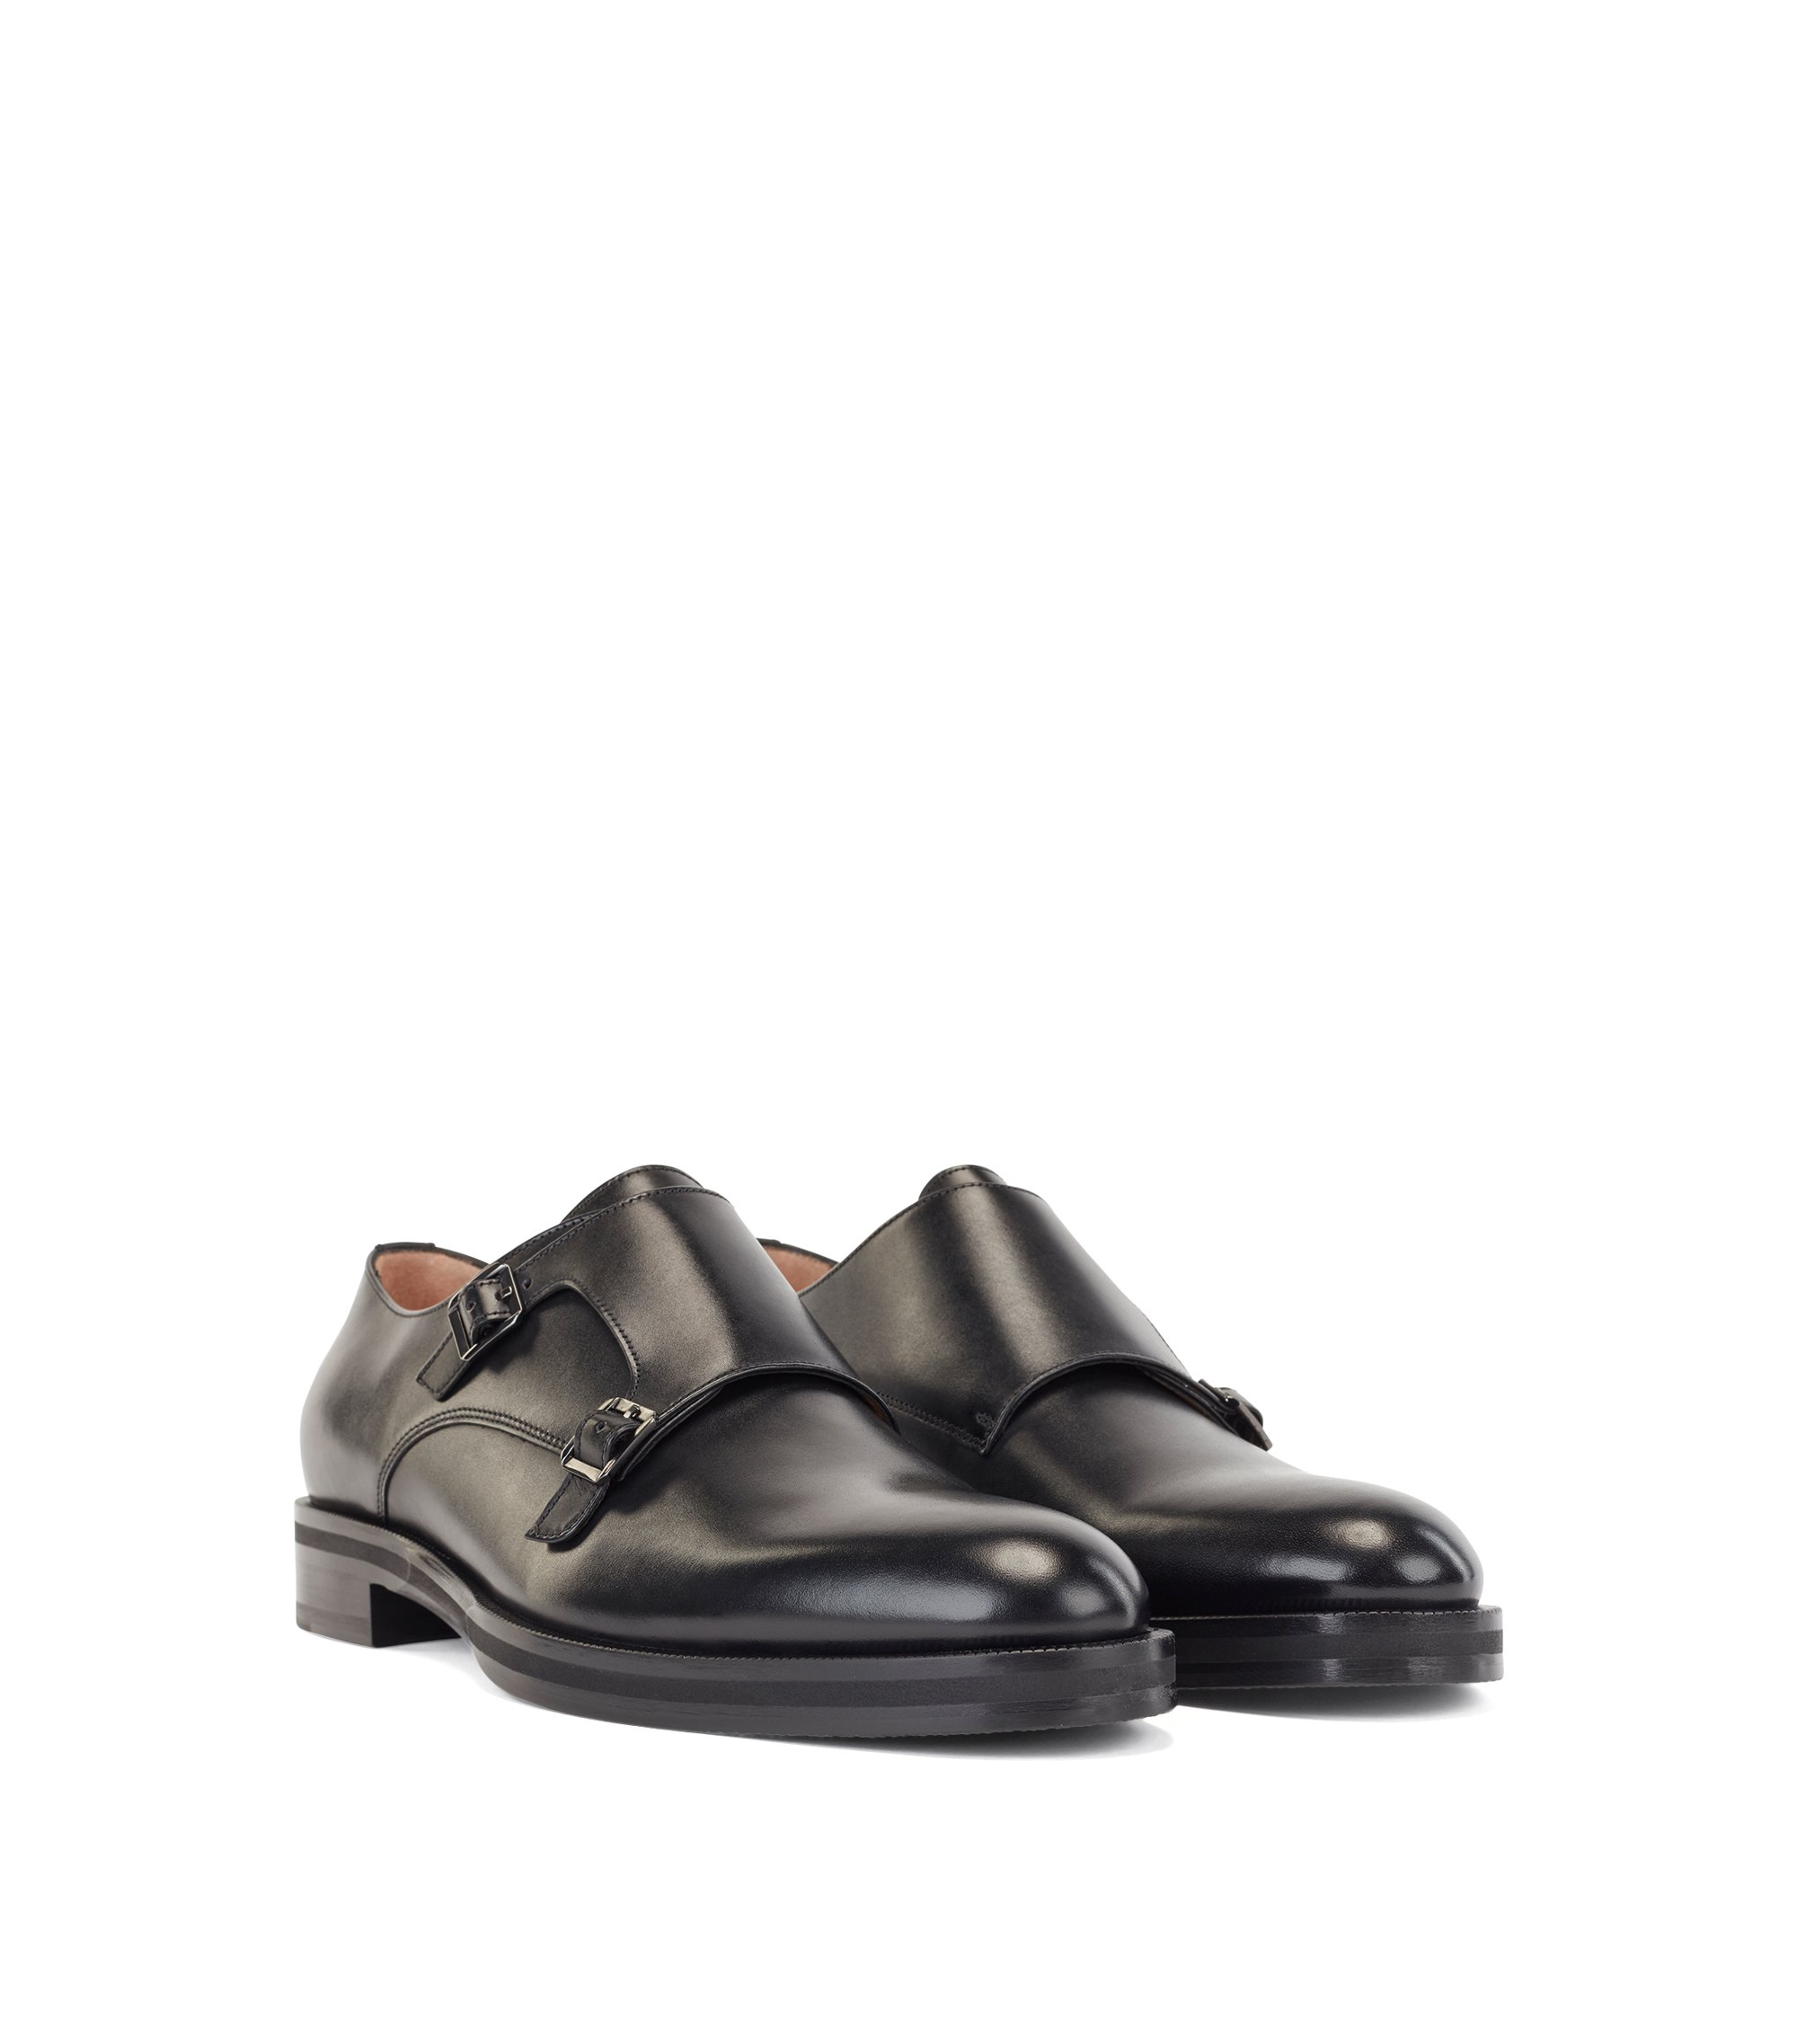 New Mens Dress Suit Italian Faux Leather Double Monkstraps Shoes UK Size 6-11